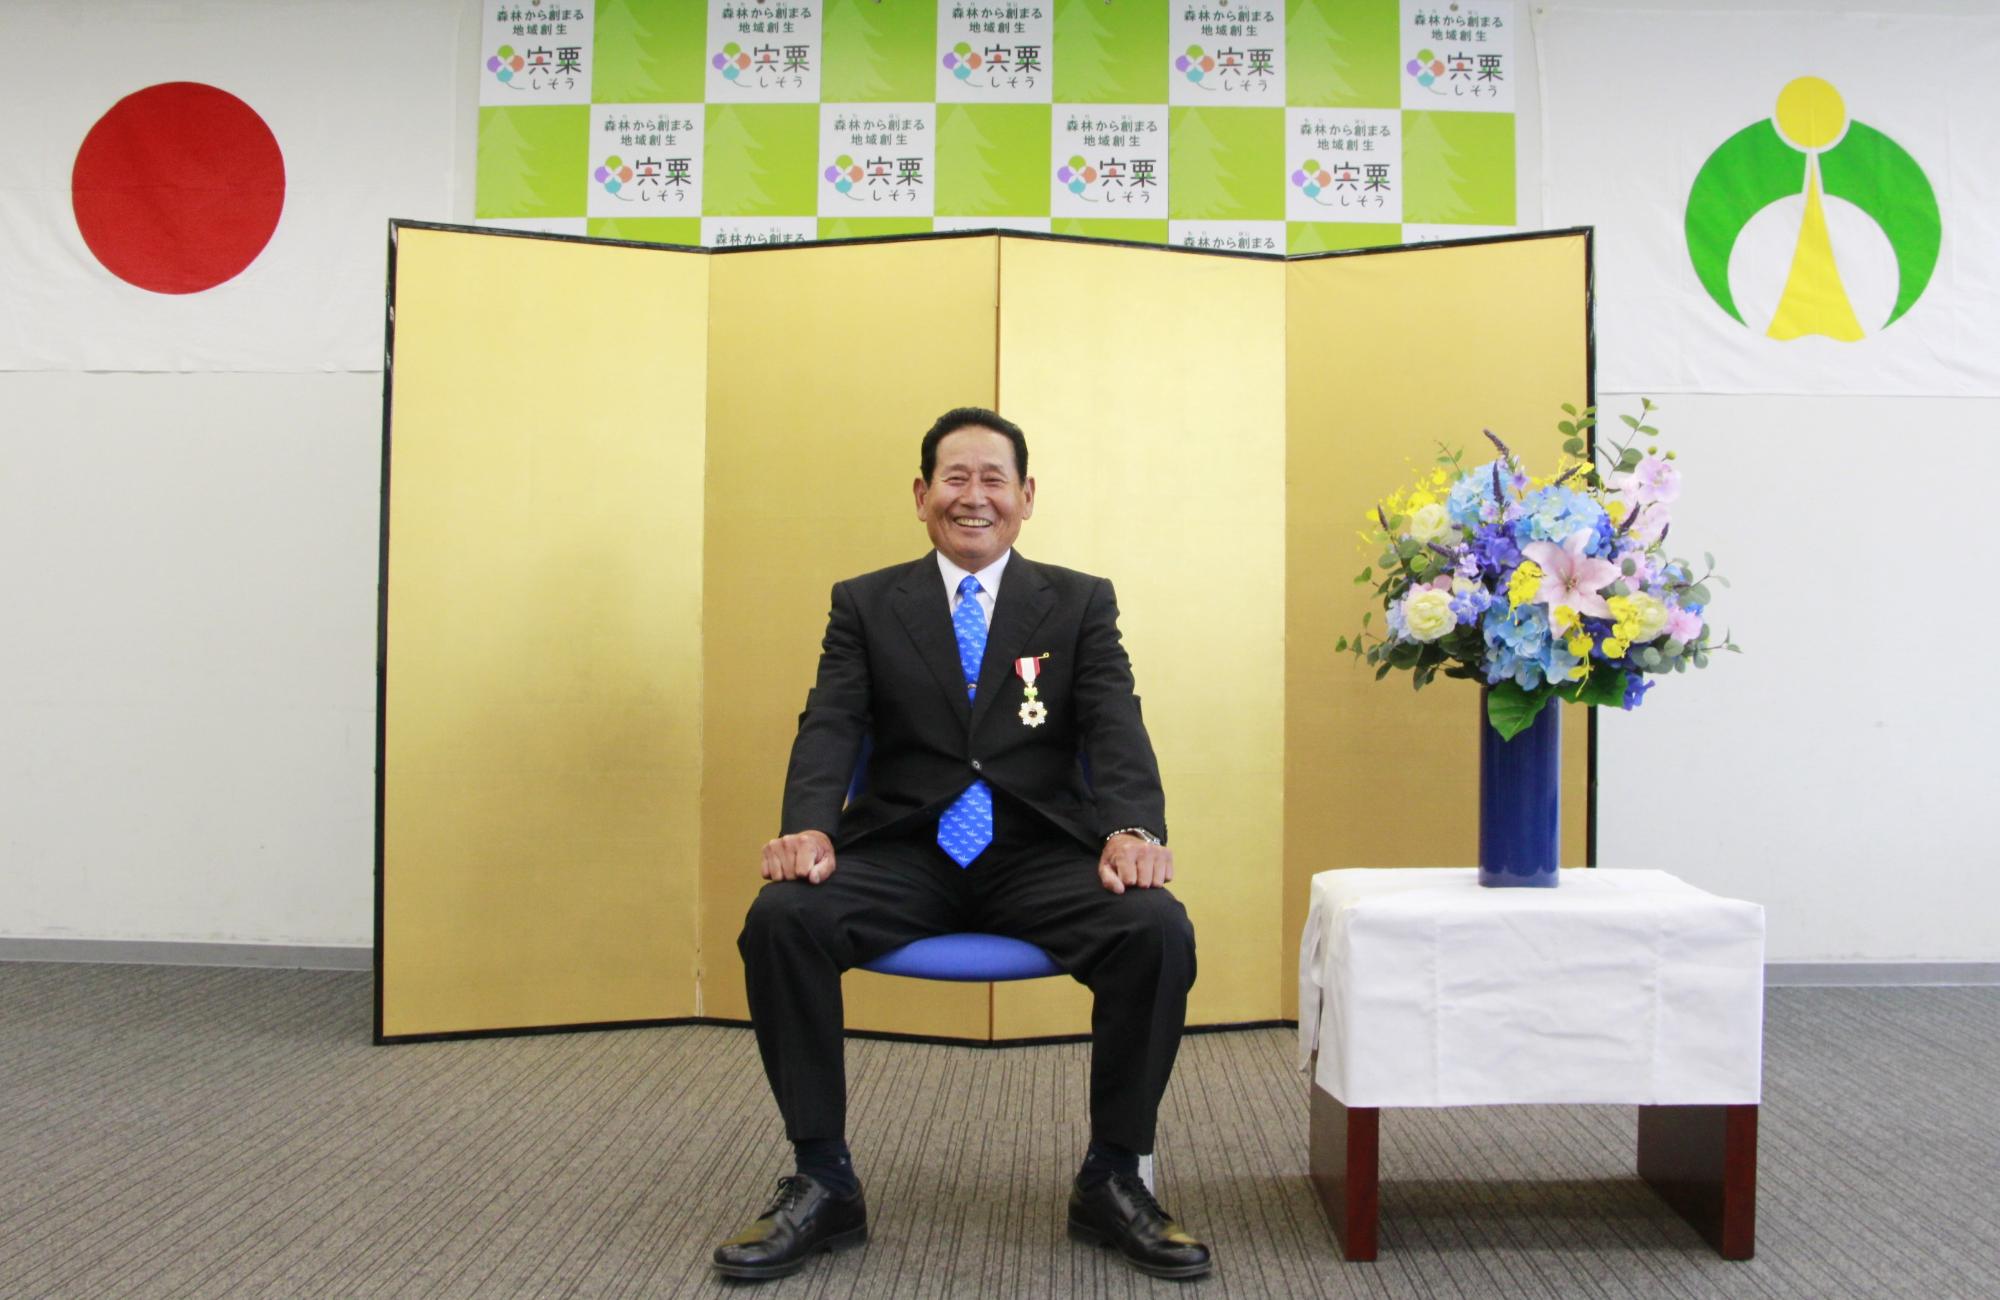 令和3年春叙勲を受章された小林健志さんが椅子に座っている写真